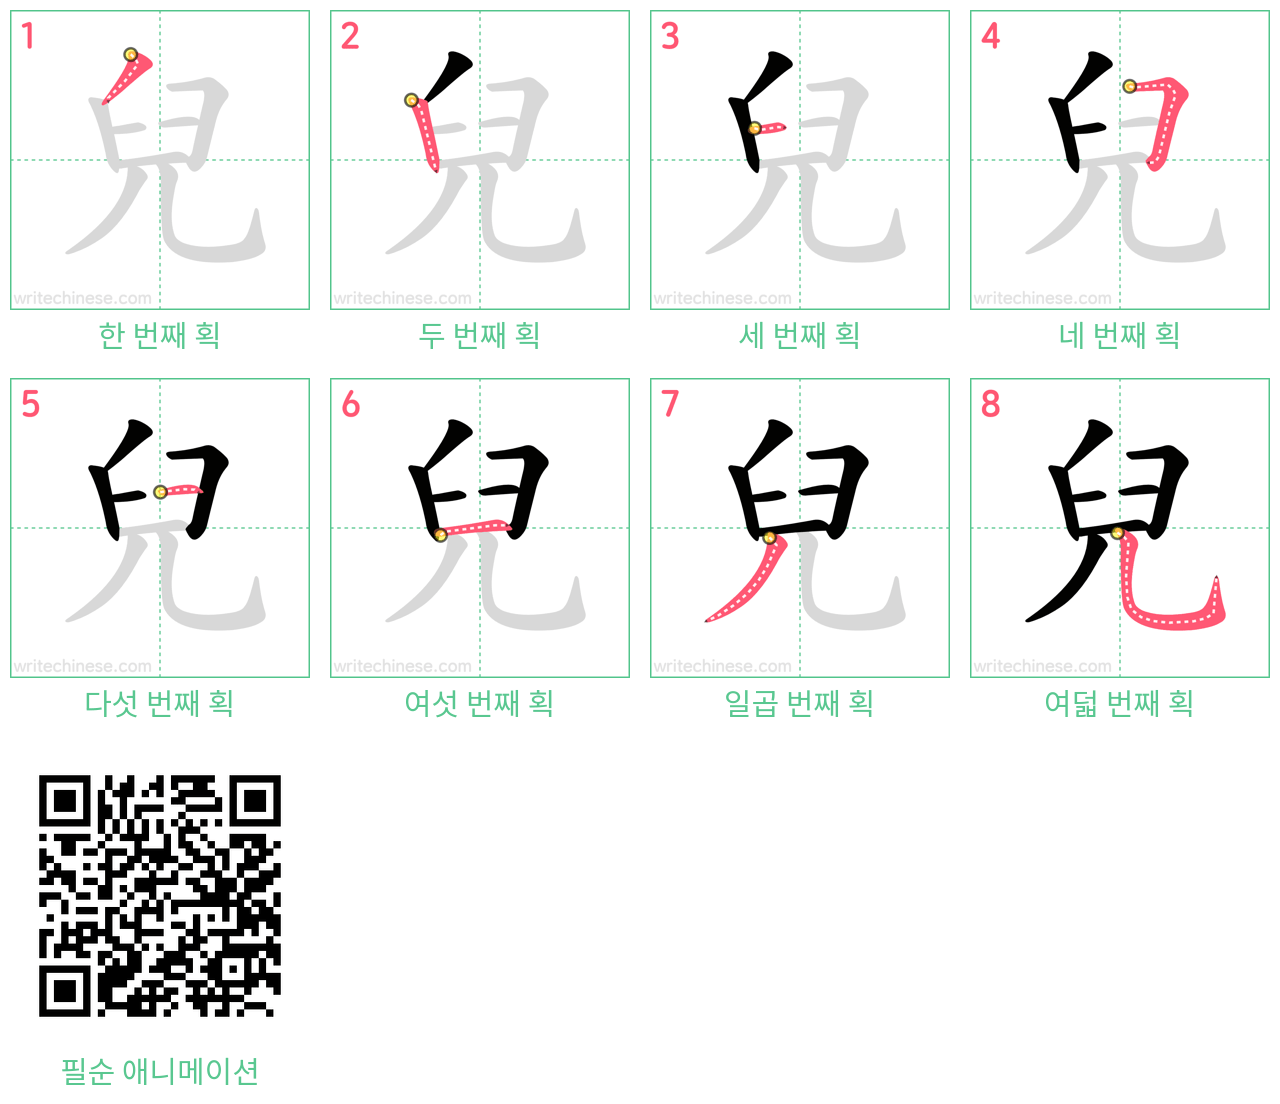 兒 step-by-step stroke order diagrams